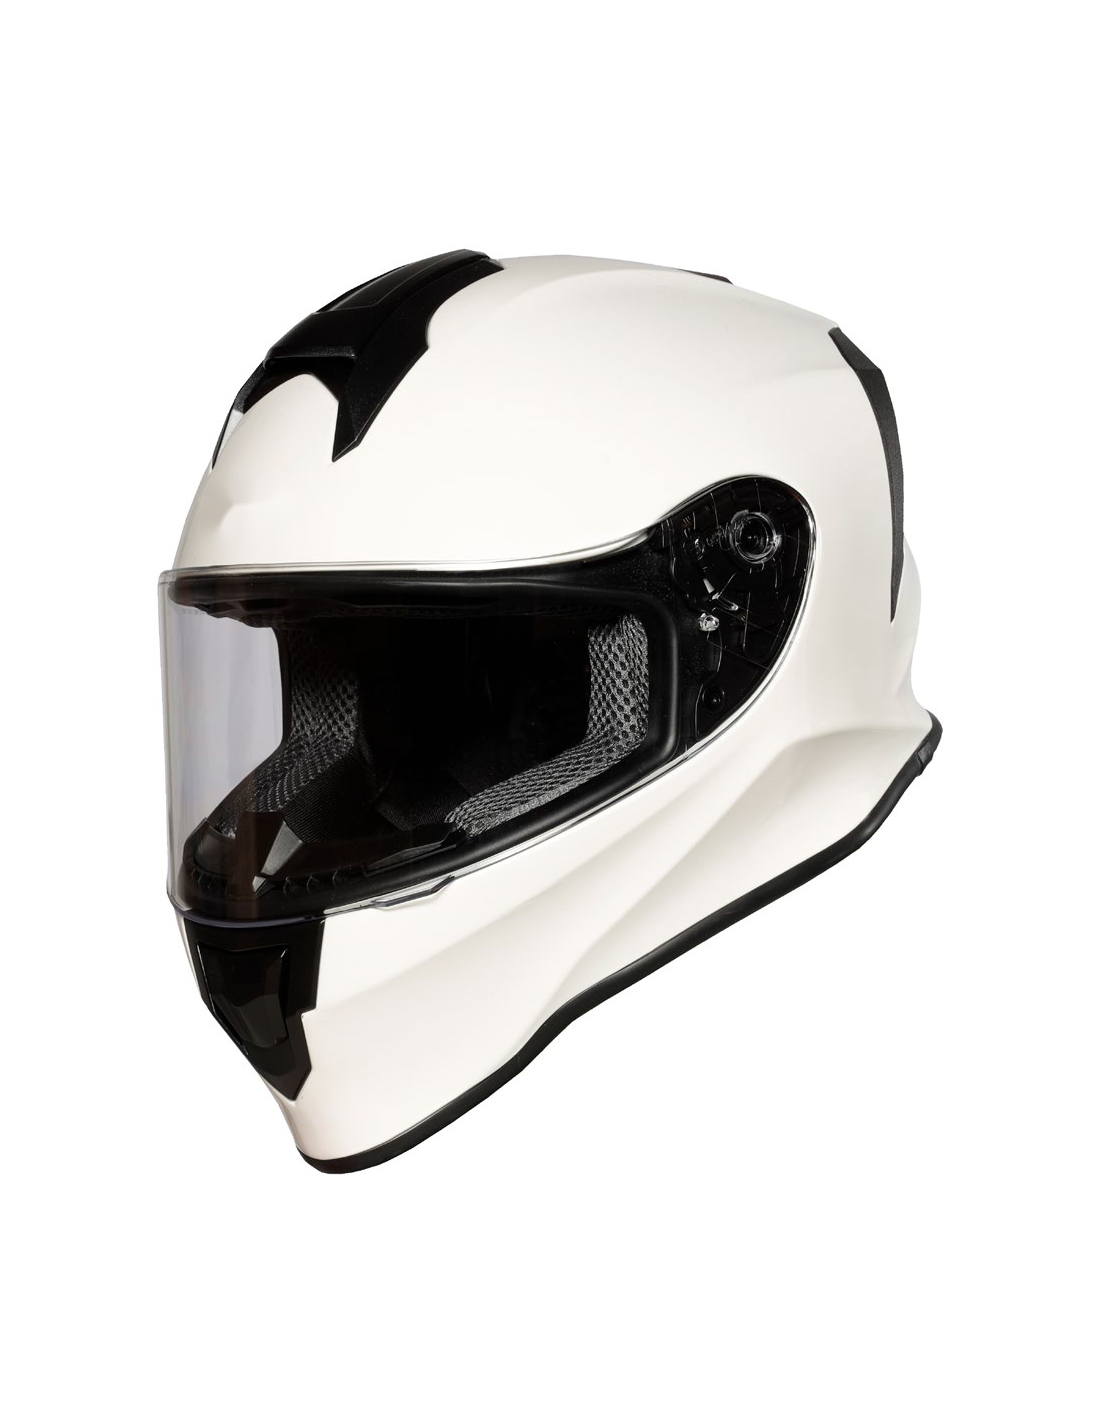 Ventajas del pinlock en cascos para moto moto